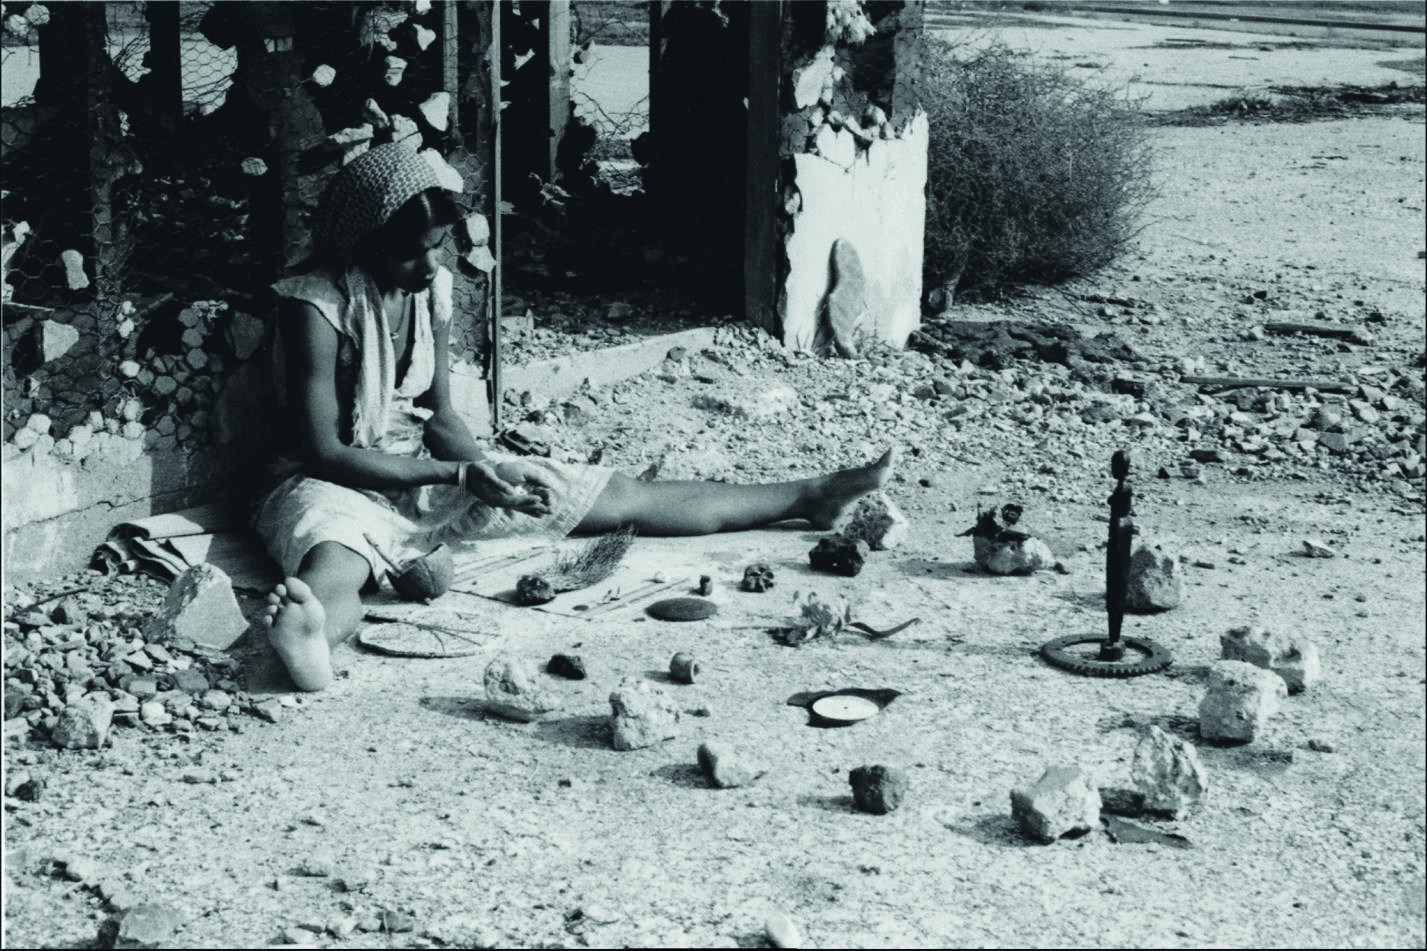 Barbara McCullough, Water Ritual #1: An Urban Rite of Purification, 1979 – 1990. Film 16mm restauré et transféré en numérique, durée : 6'15''. Achat à Third World Newsreel, New York (États-Unis). Collection Frac Bretagne. © droits réservés